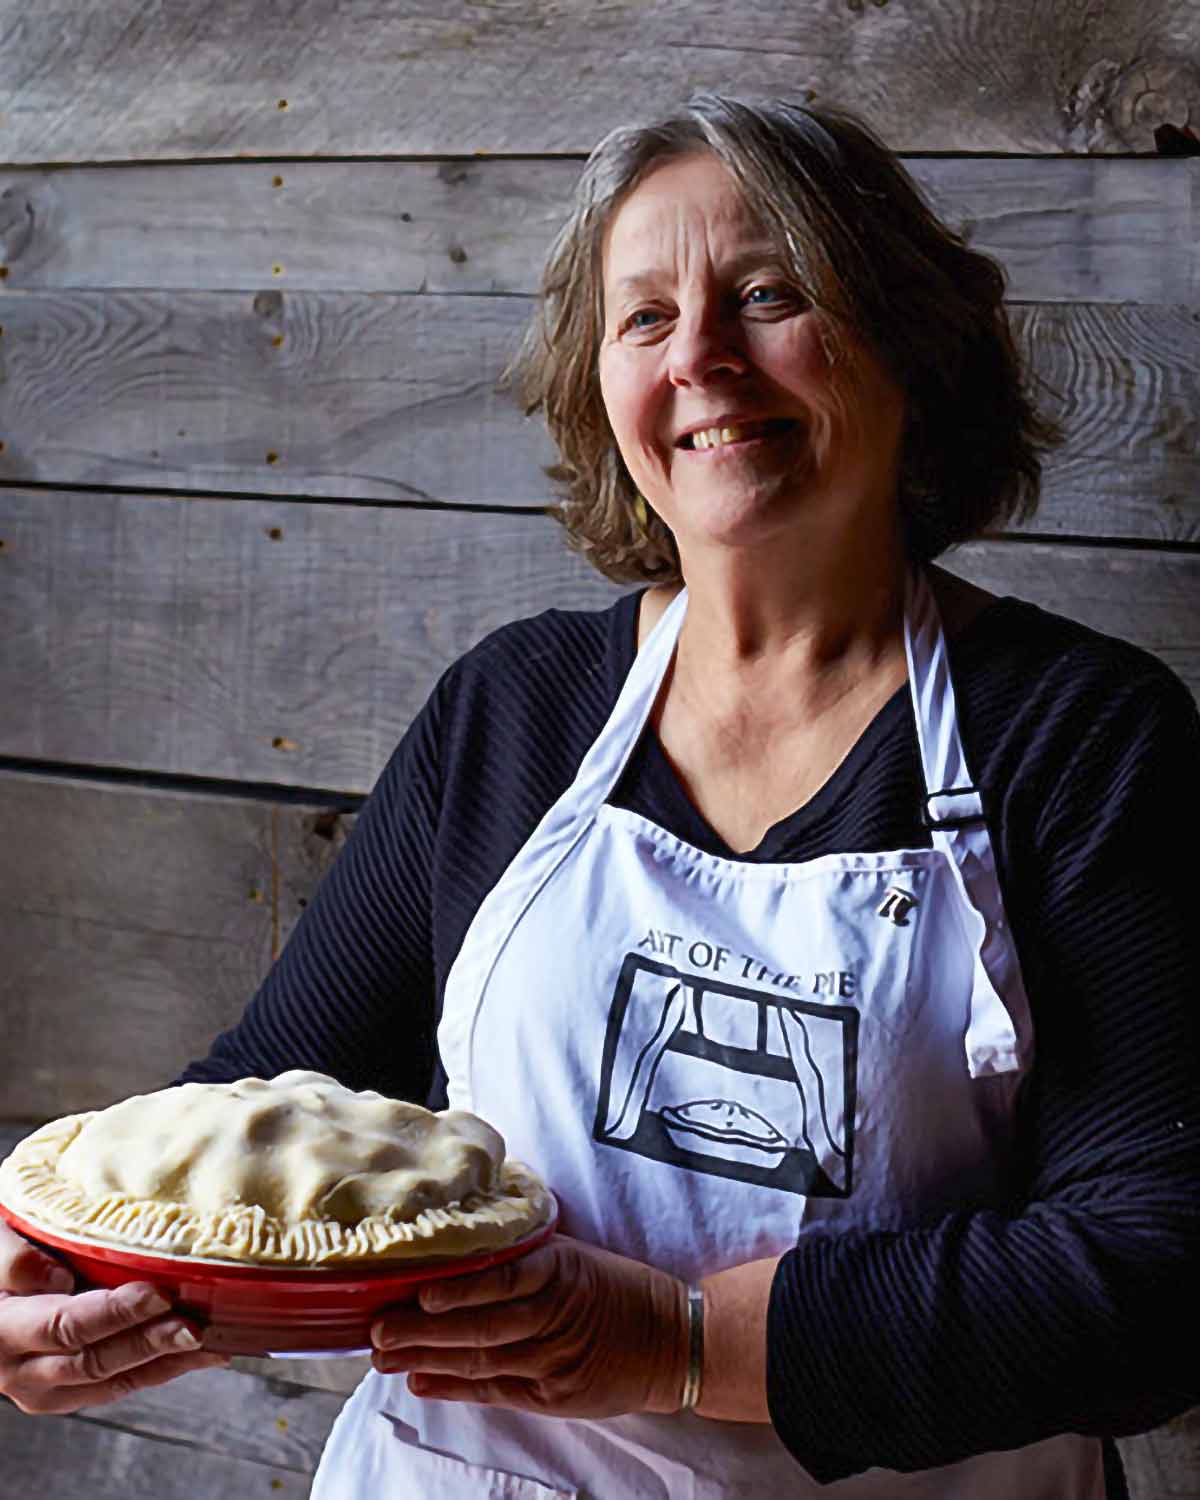 Kate McDermott holding a pie.